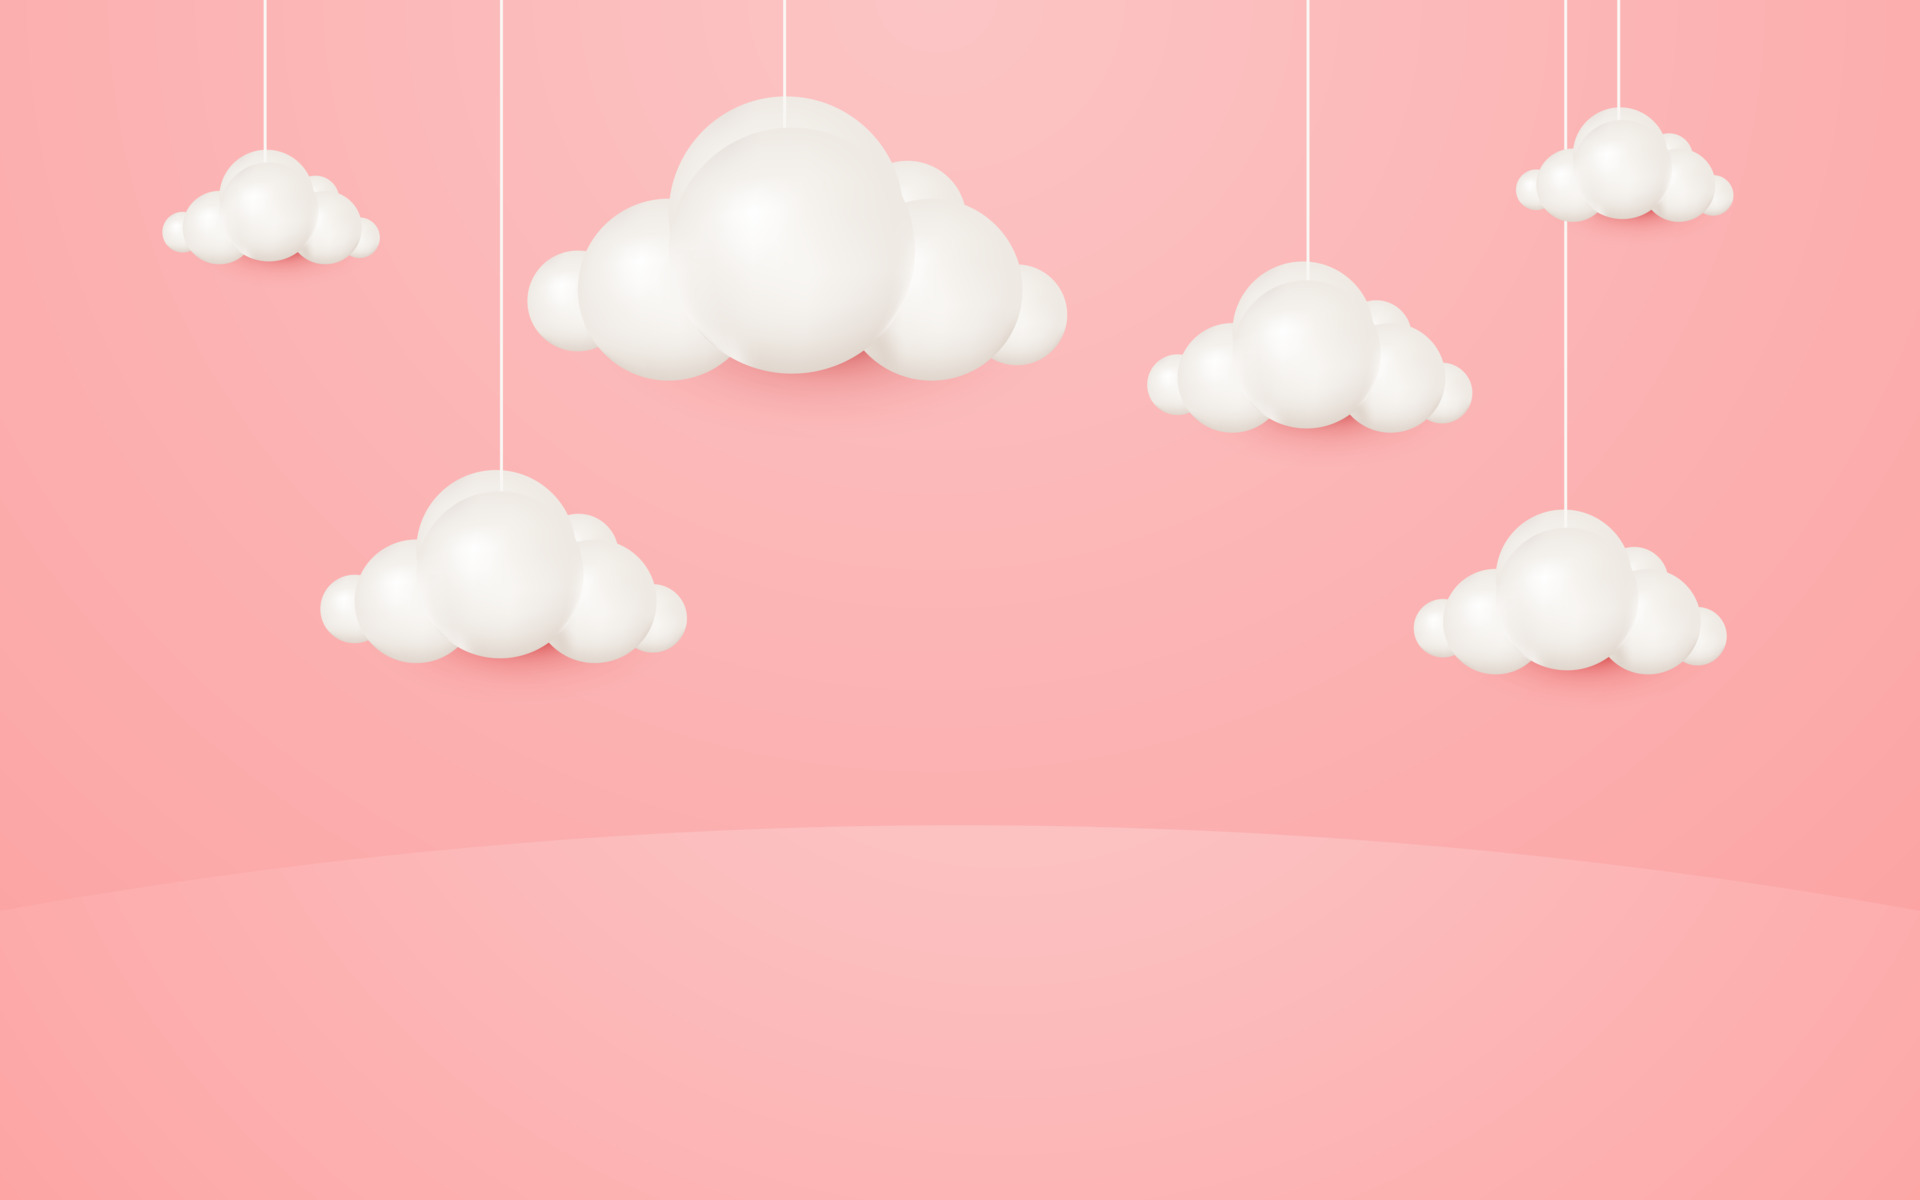 Tận hưởng phong cách hoạt hình 3D đầy sáng tạo, độc đáo và mới mẻ! Với chủ đề đám mây treo trên nền hồng nhạt, bộ sưu tập ảnh nền này sẽ mang đến một không gian sống động, trẻ trung và tươi vui. Điện thoại hay máy tính của bạn sẽ trở nên thú vị và đặc biệt hơn với những hình ảnh tuyệt đẹp này!